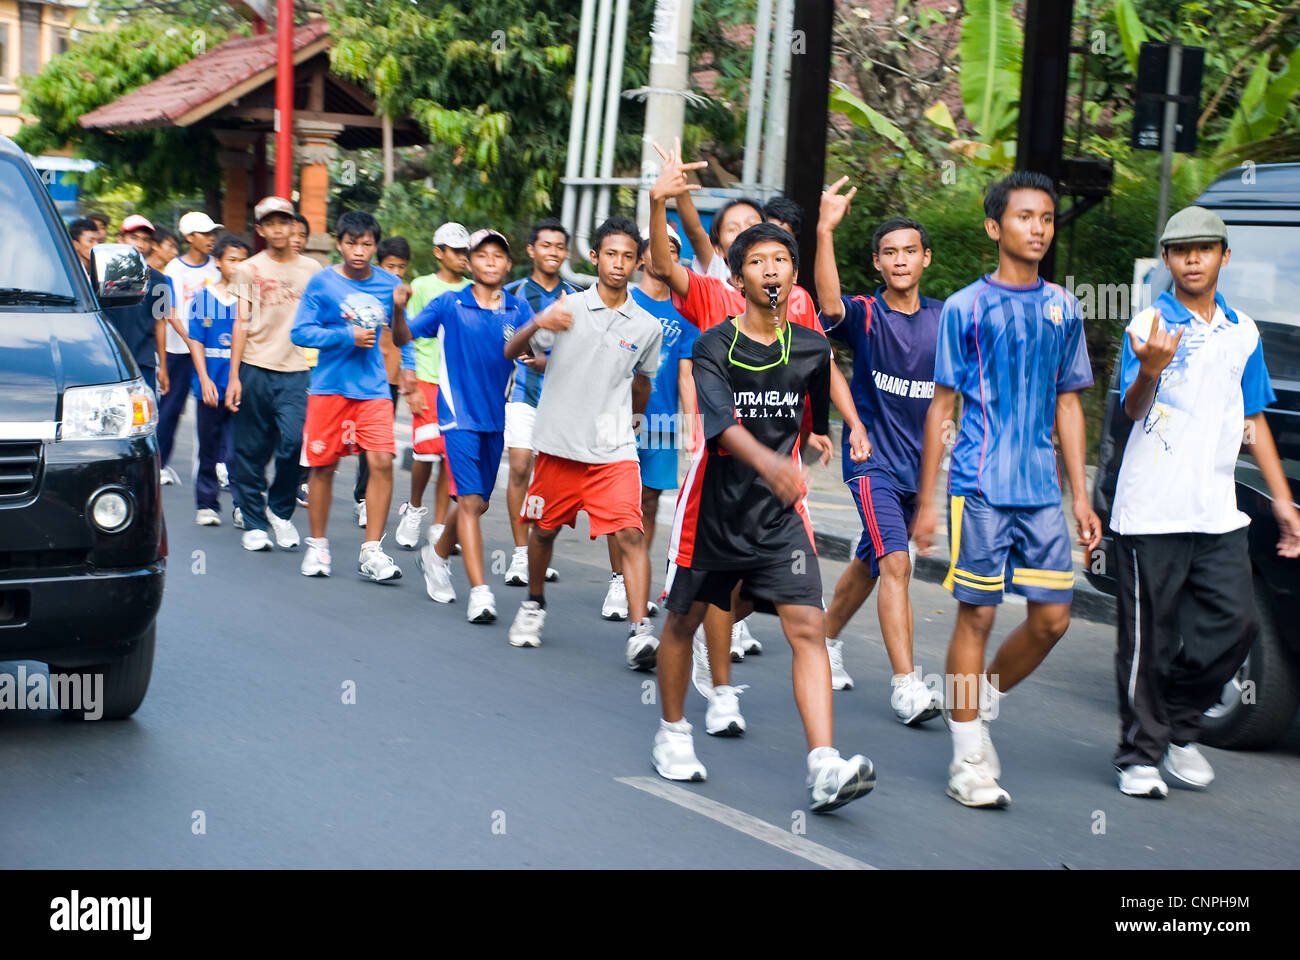 adolescent marchers in kuta, bali, indonesia Stock Photo